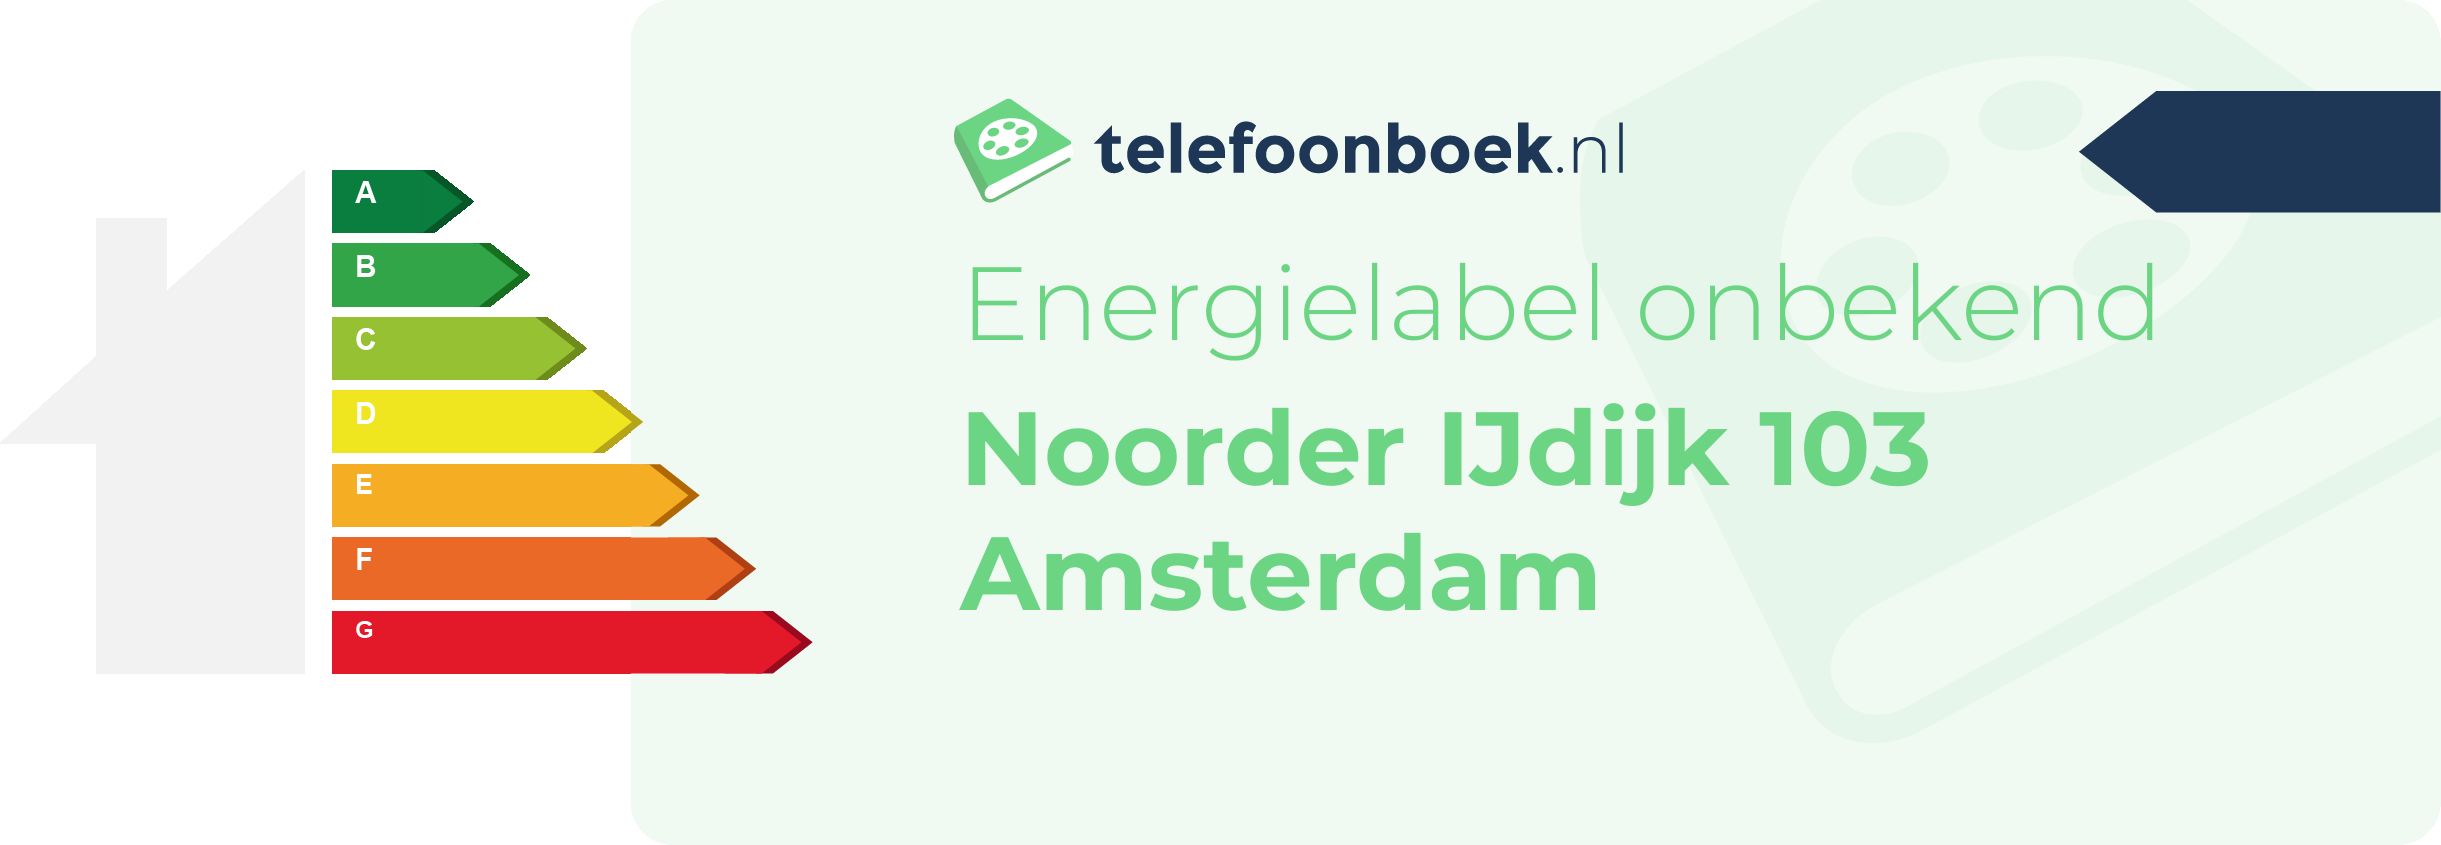 Energielabel Noorder IJdijk 103 Amsterdam